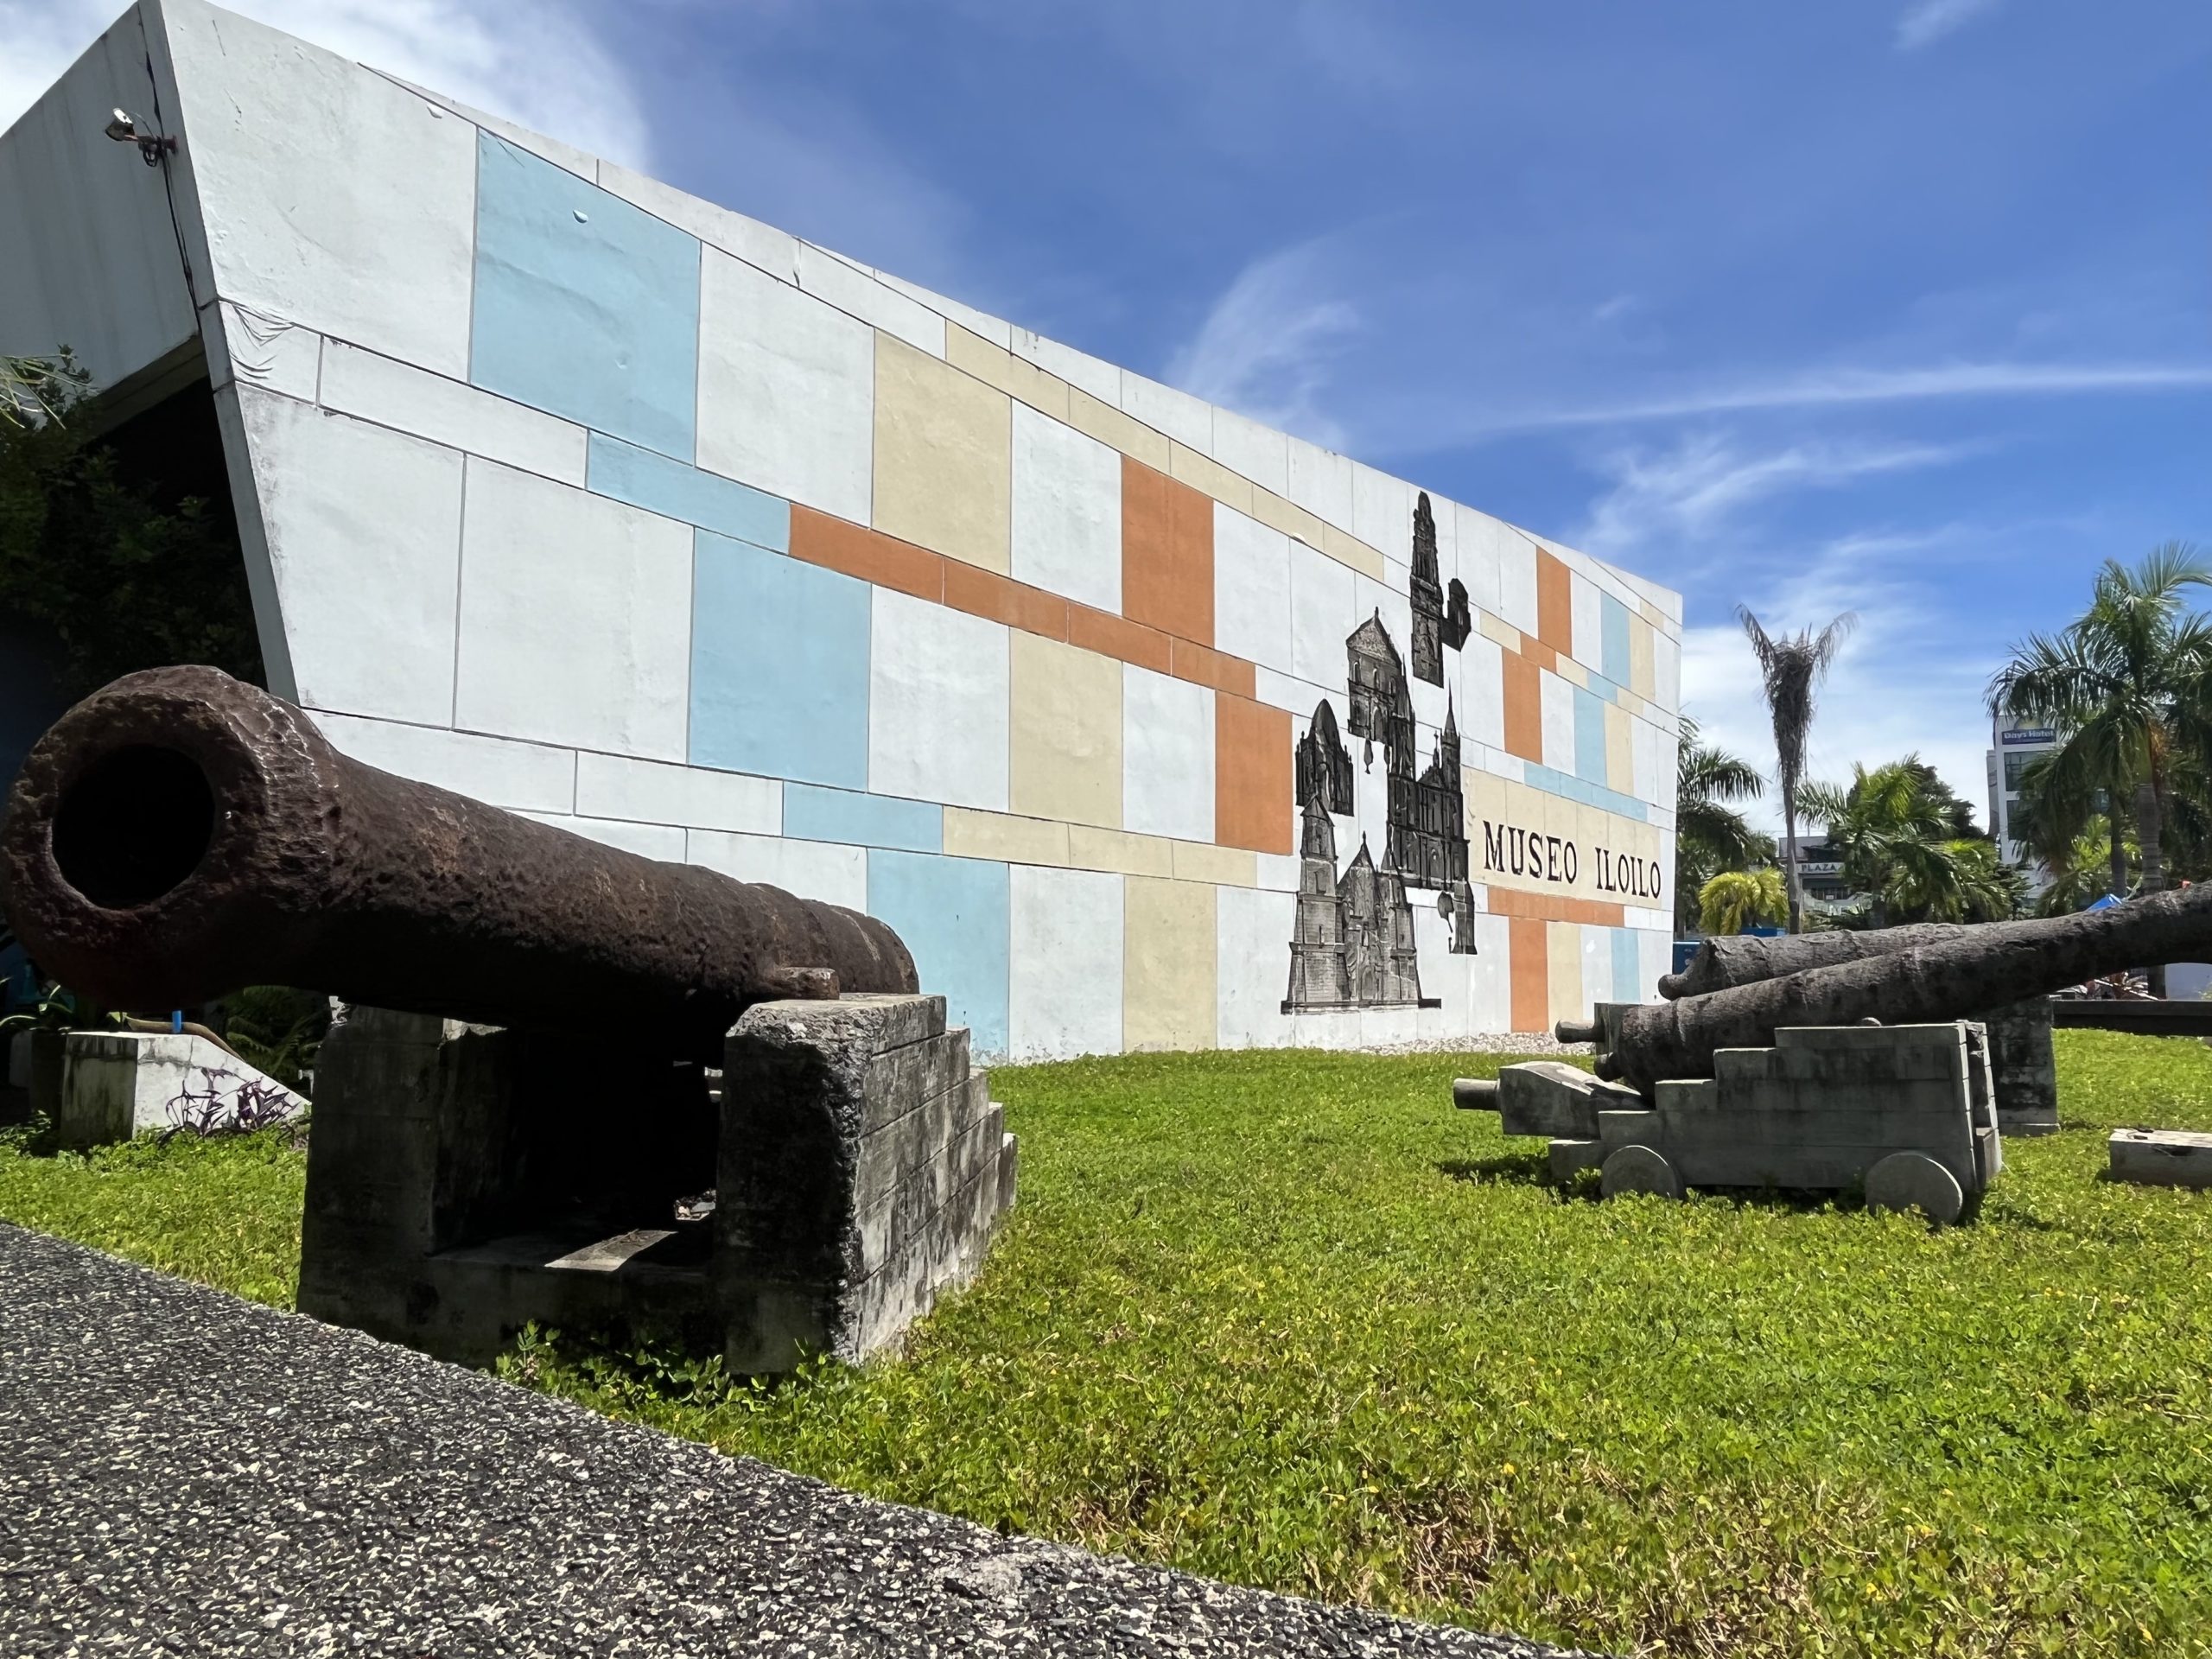 Museo Iloilo: The beacon of Iloilo arts and culture